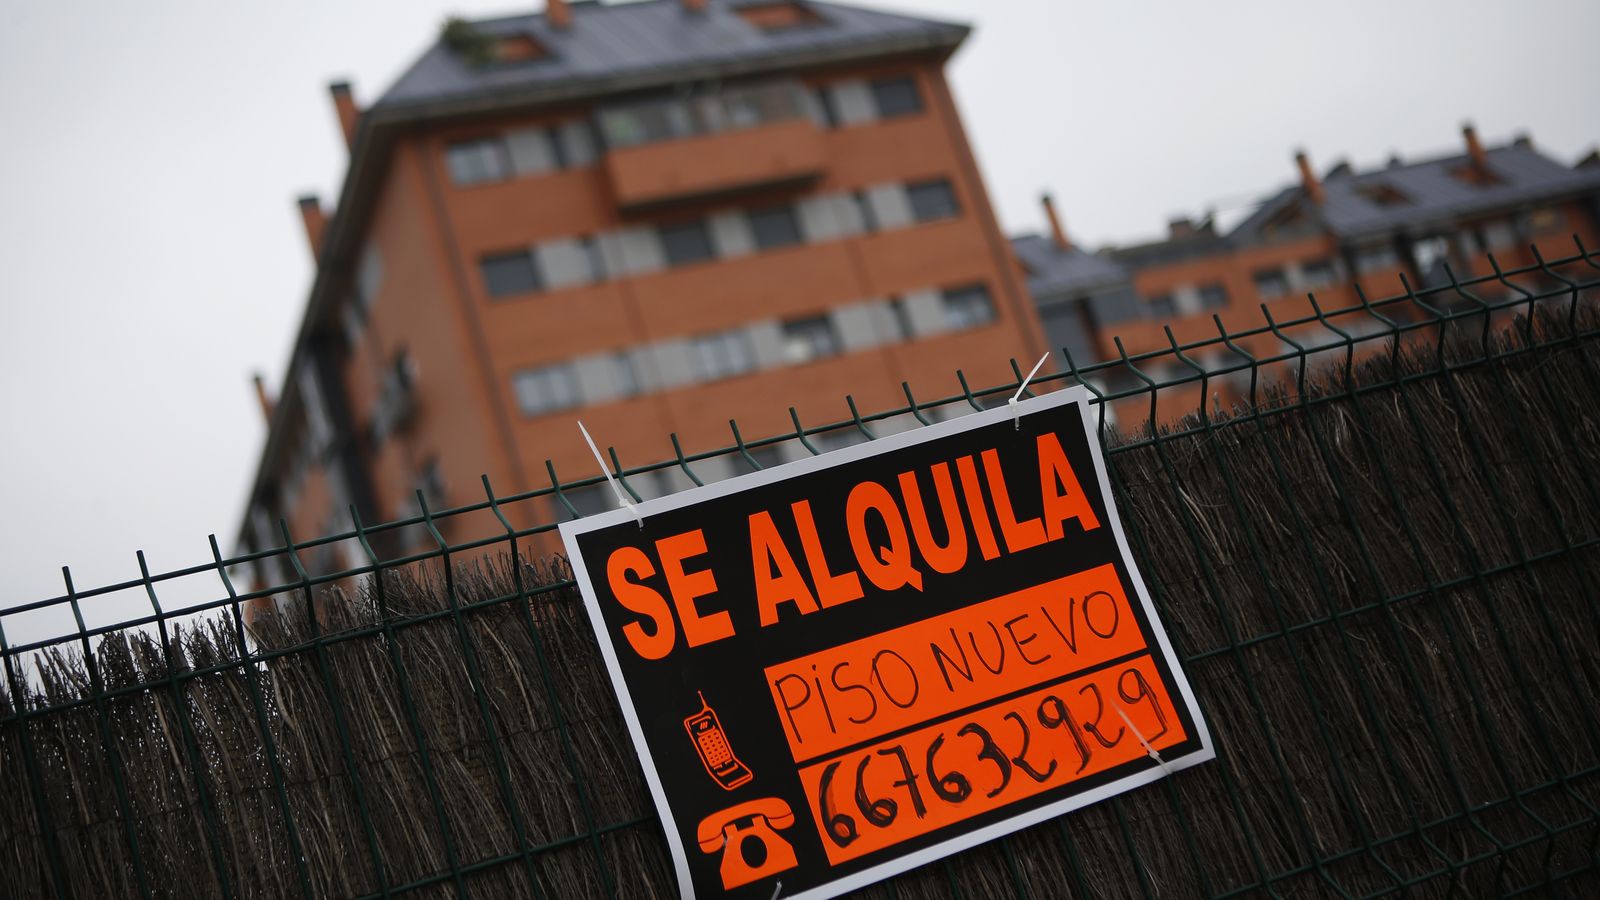 Foto: Piso en alquiler en las afueras de Madrid. (Reuters)